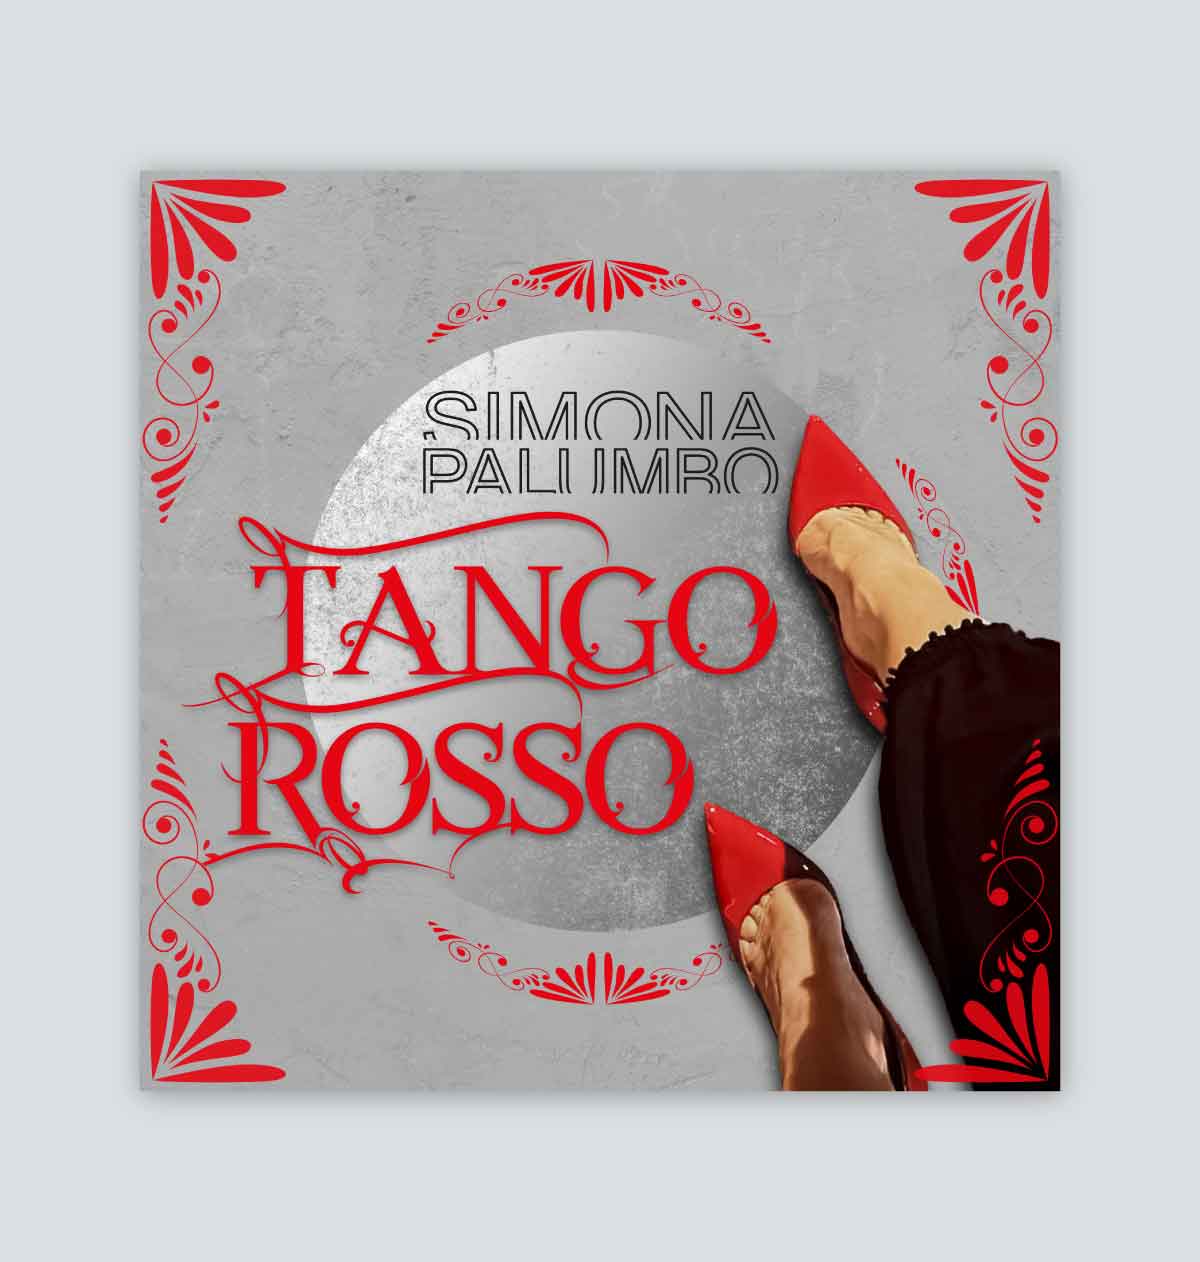 Tango rosso pre save